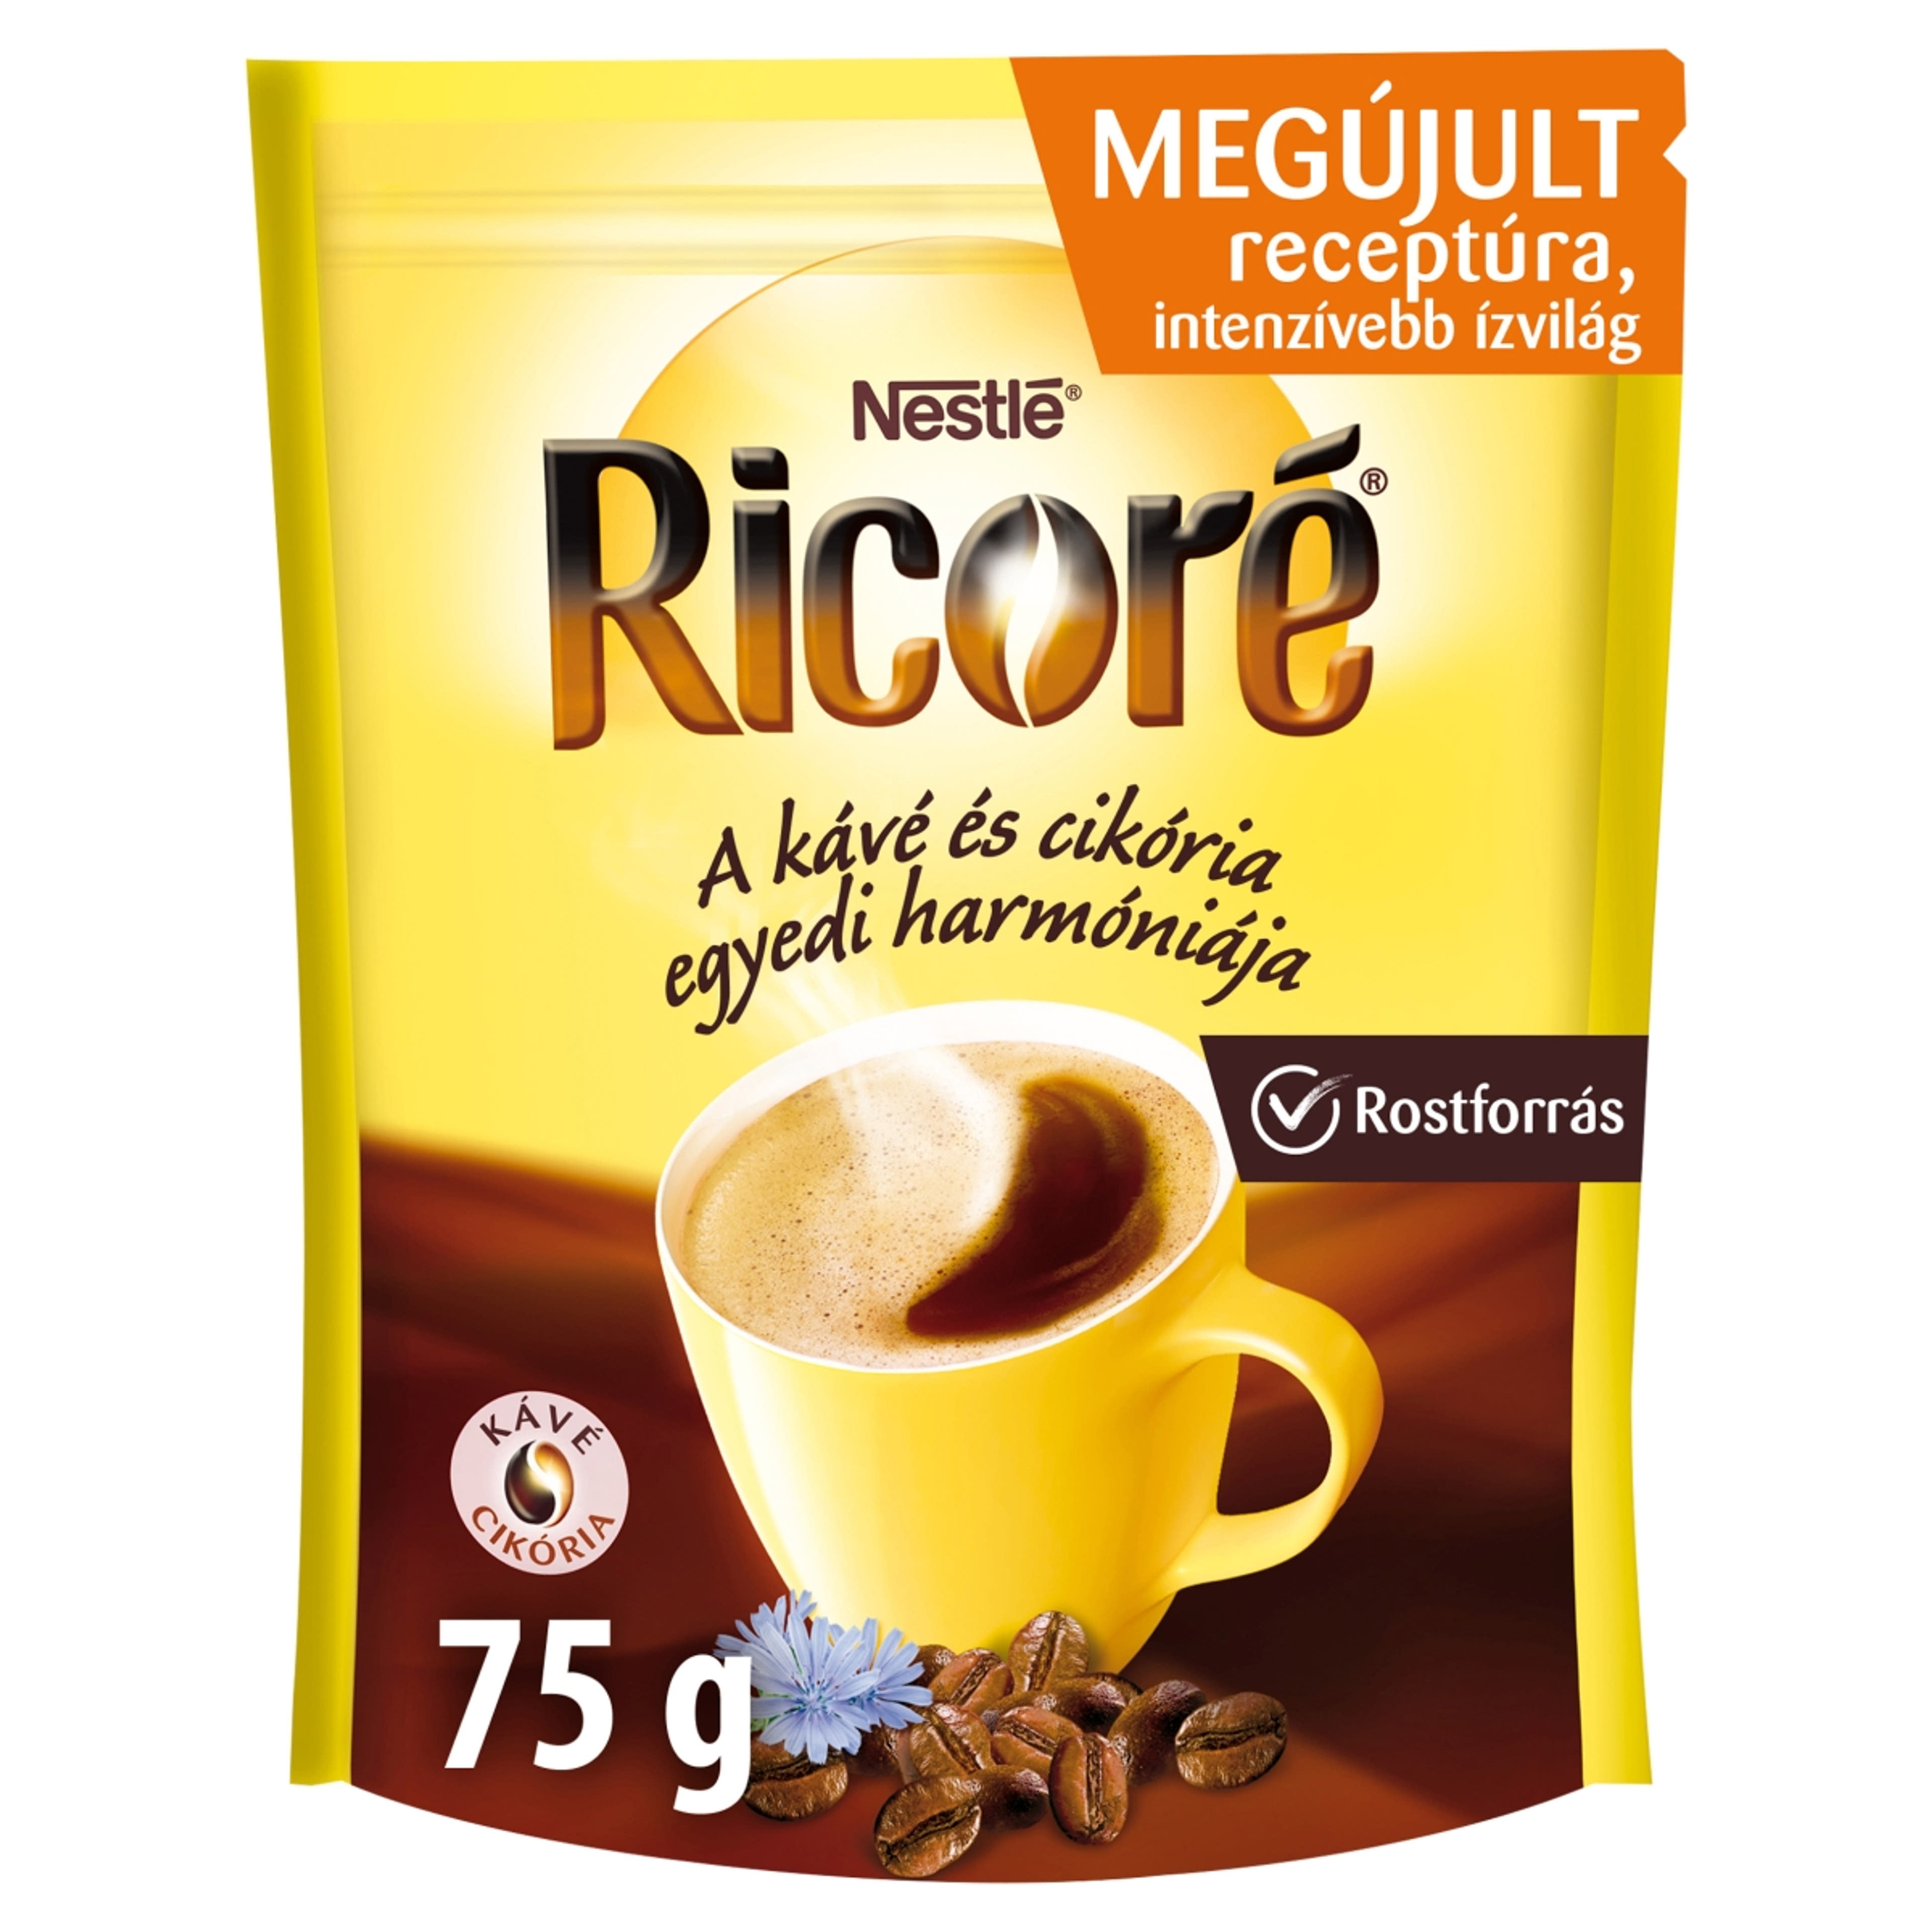 Nestlé Ricore instant kávé - 75 g-3